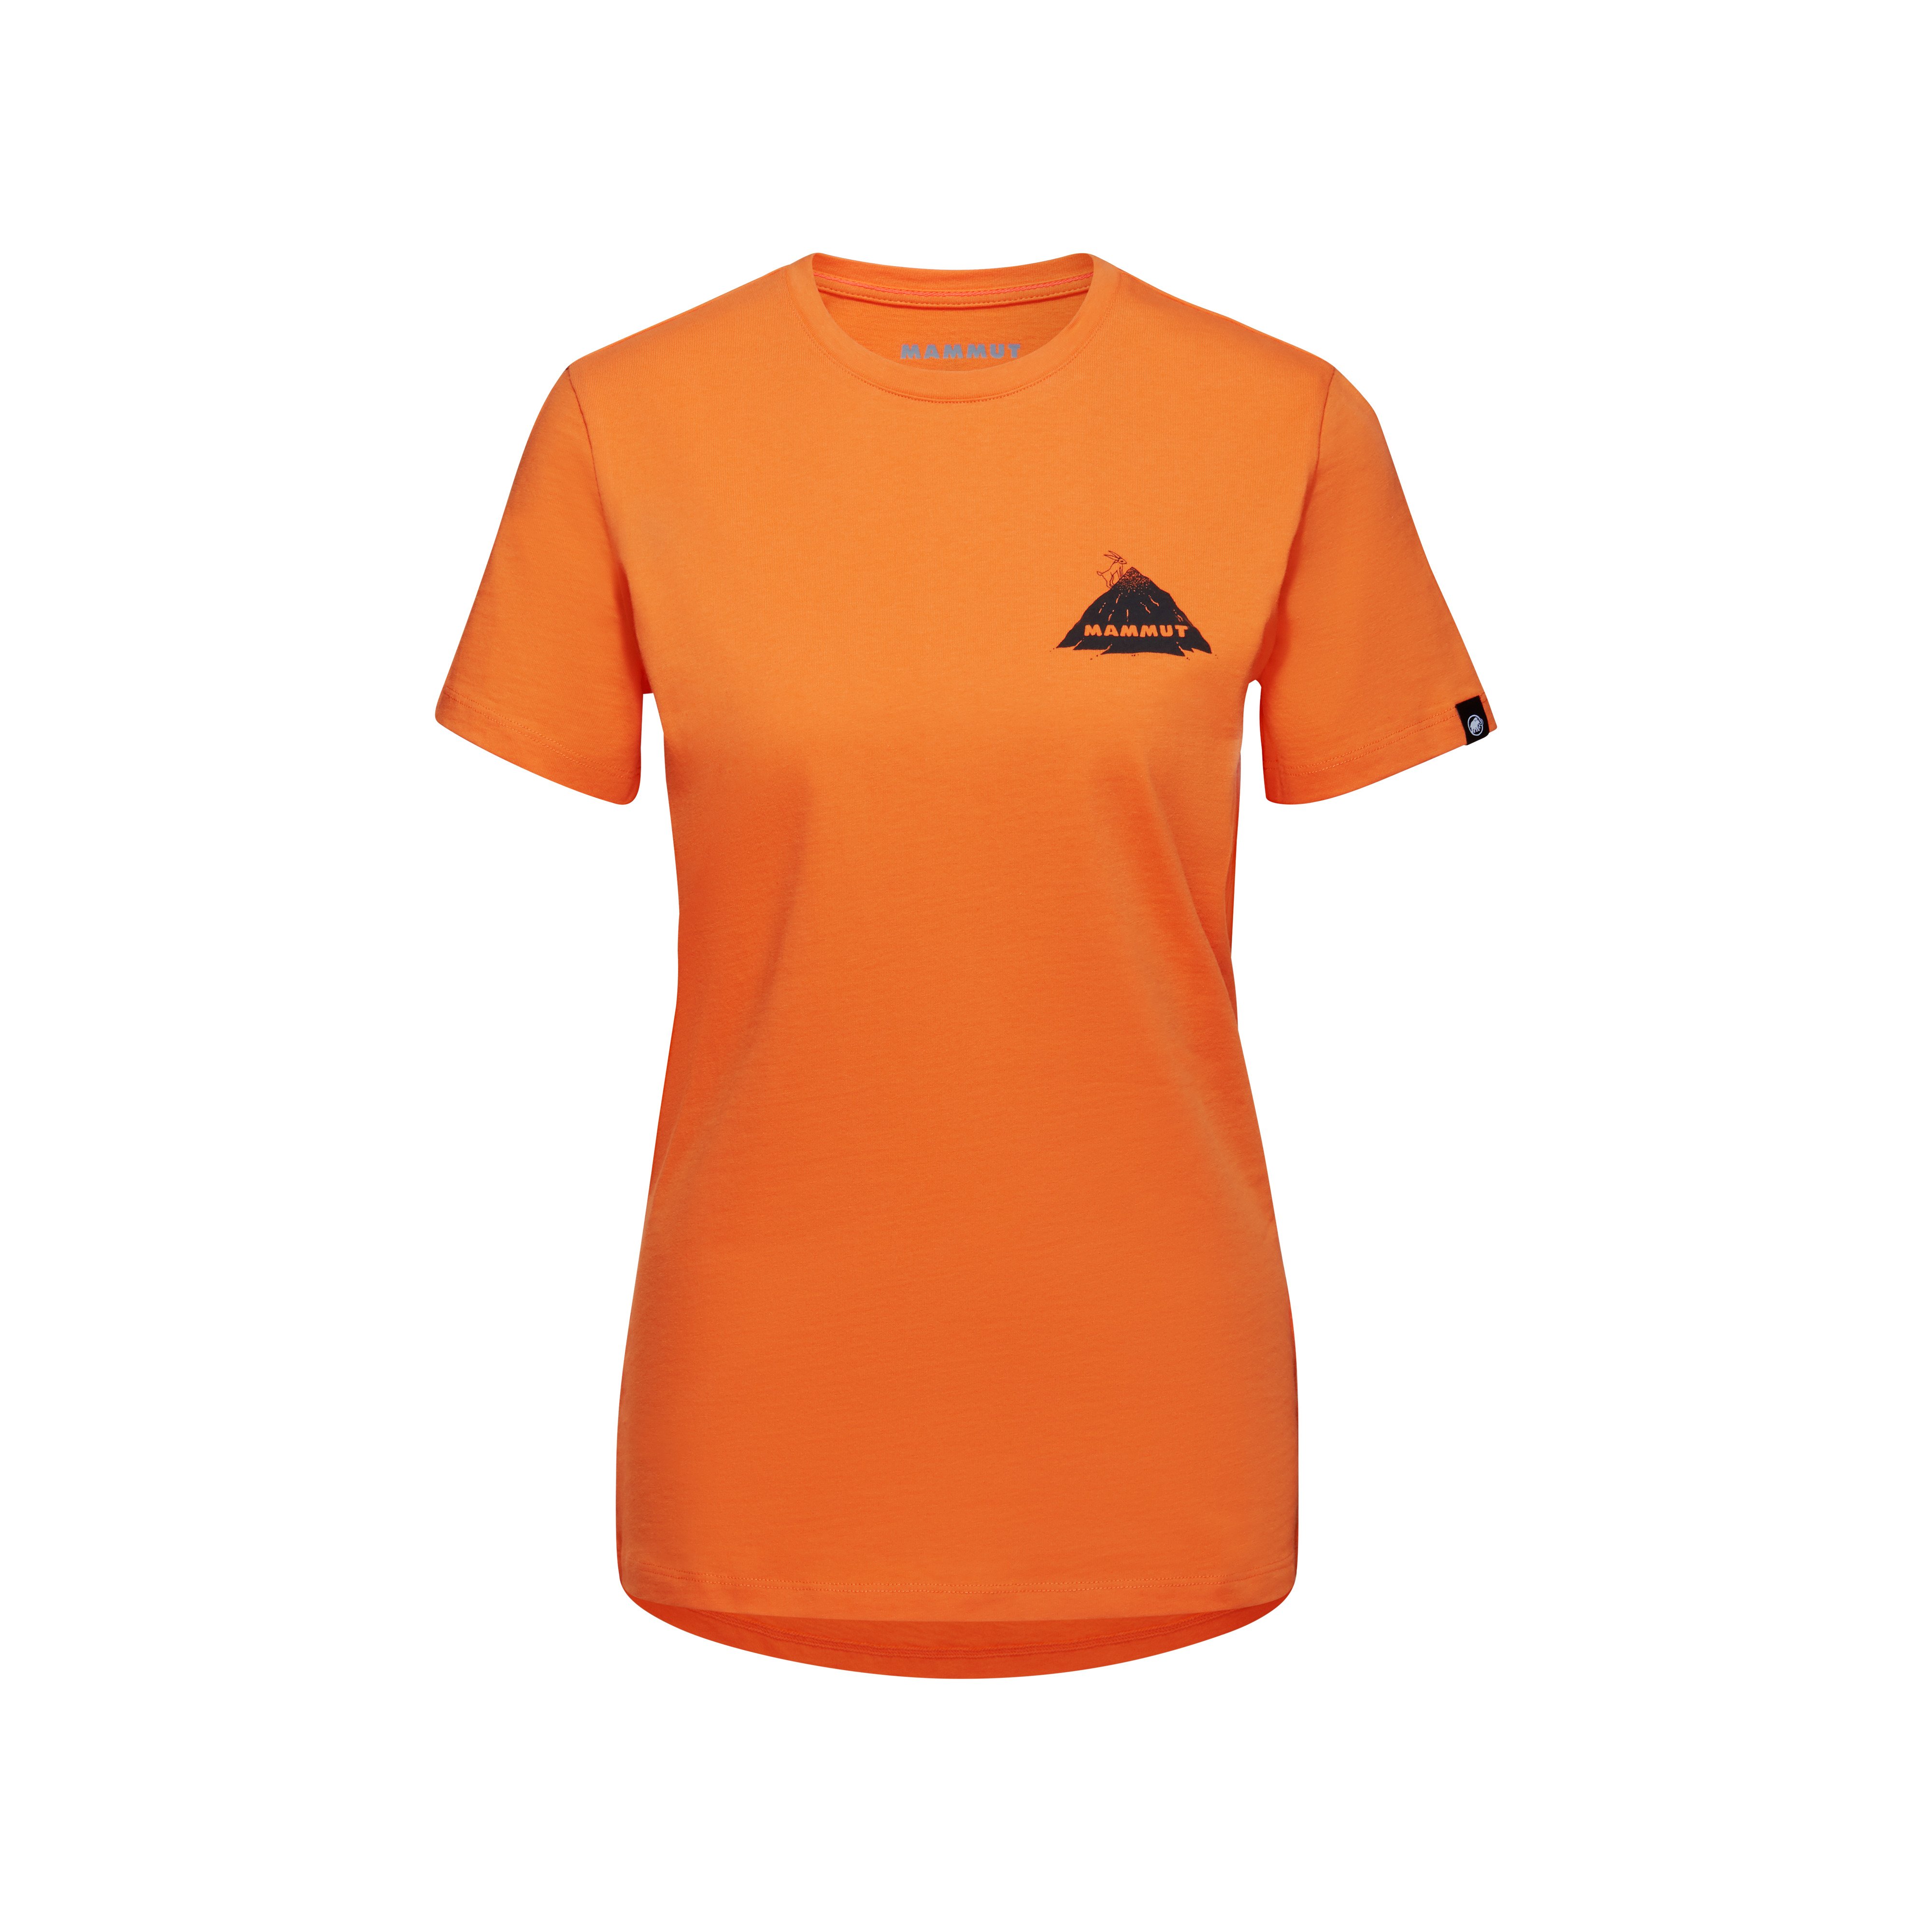 Massone T-Shirt Women Crag - dark tangerine, XS thumbnail